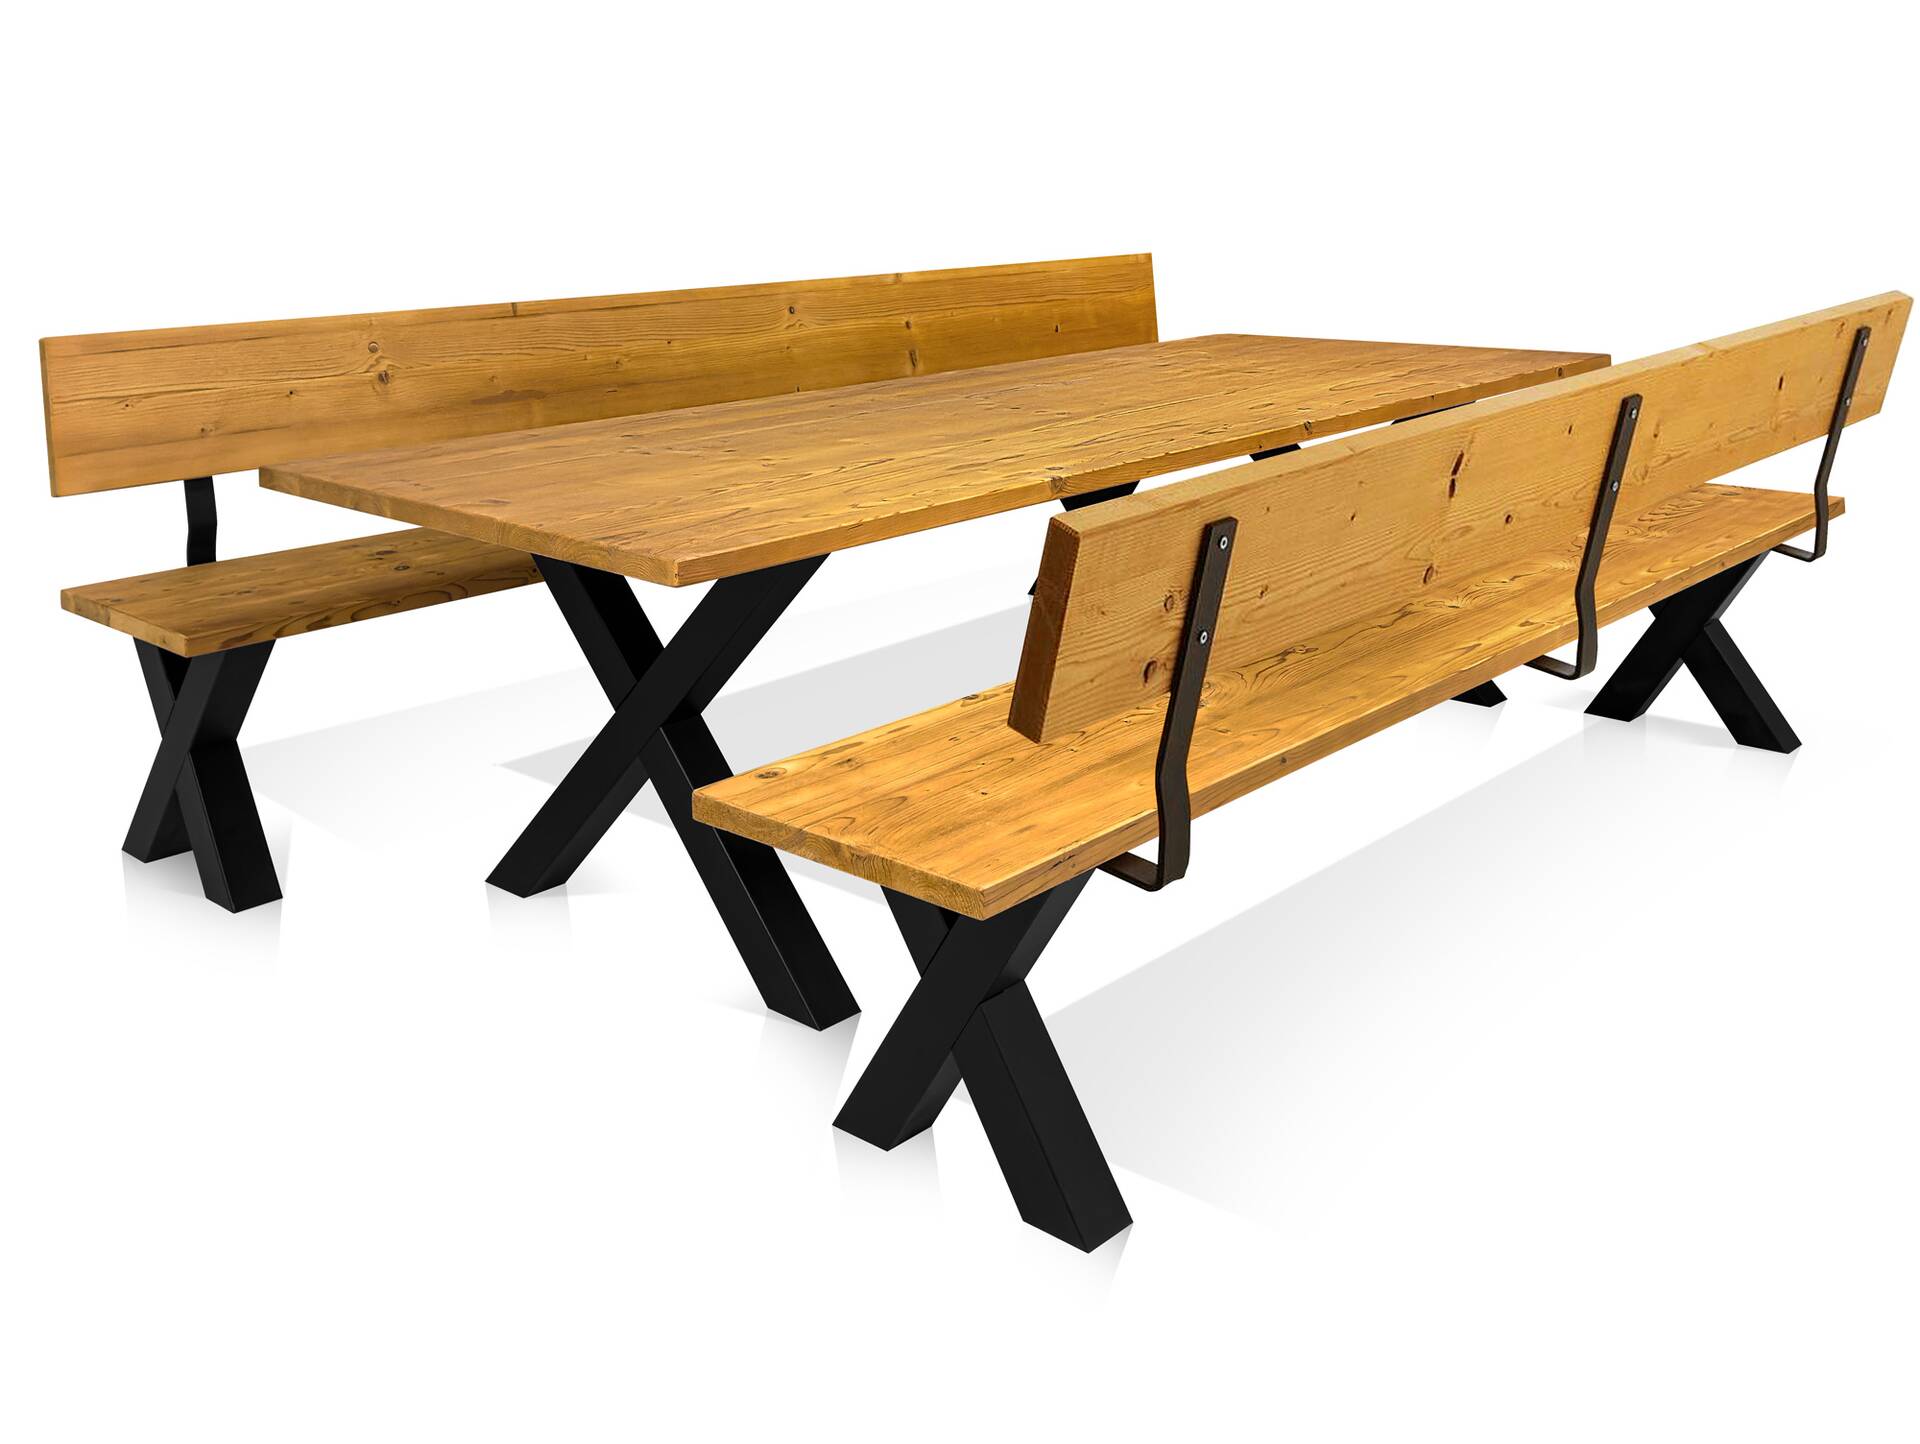 ALABAMA Sitzbank mit X-Beinen, Altholzoptik, Material Massivholz, THERMO-Fichte lackiert 160 cm | mit Rückenlehne | natur